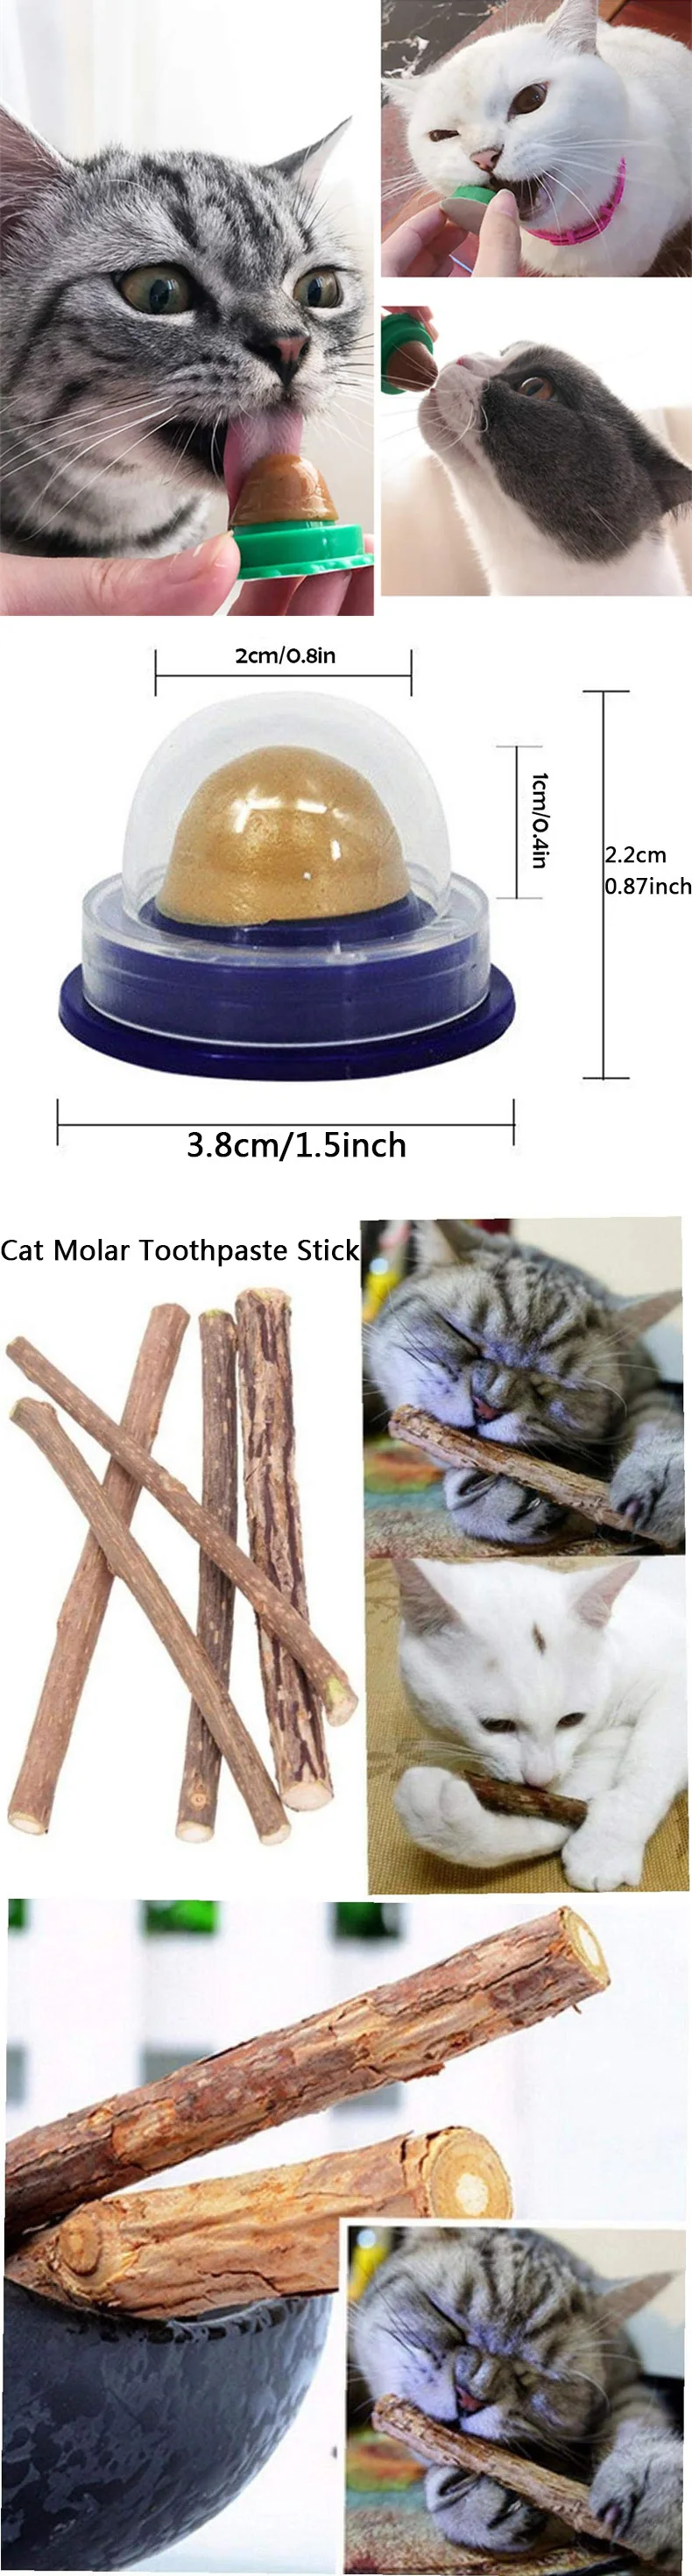 Здоровые кошачьи закуски кошачья мята игрушка Сахар Конфеты лизание питание гель энергия+ кошка молярная зубная паста палочка закуски палочки чистые зубы